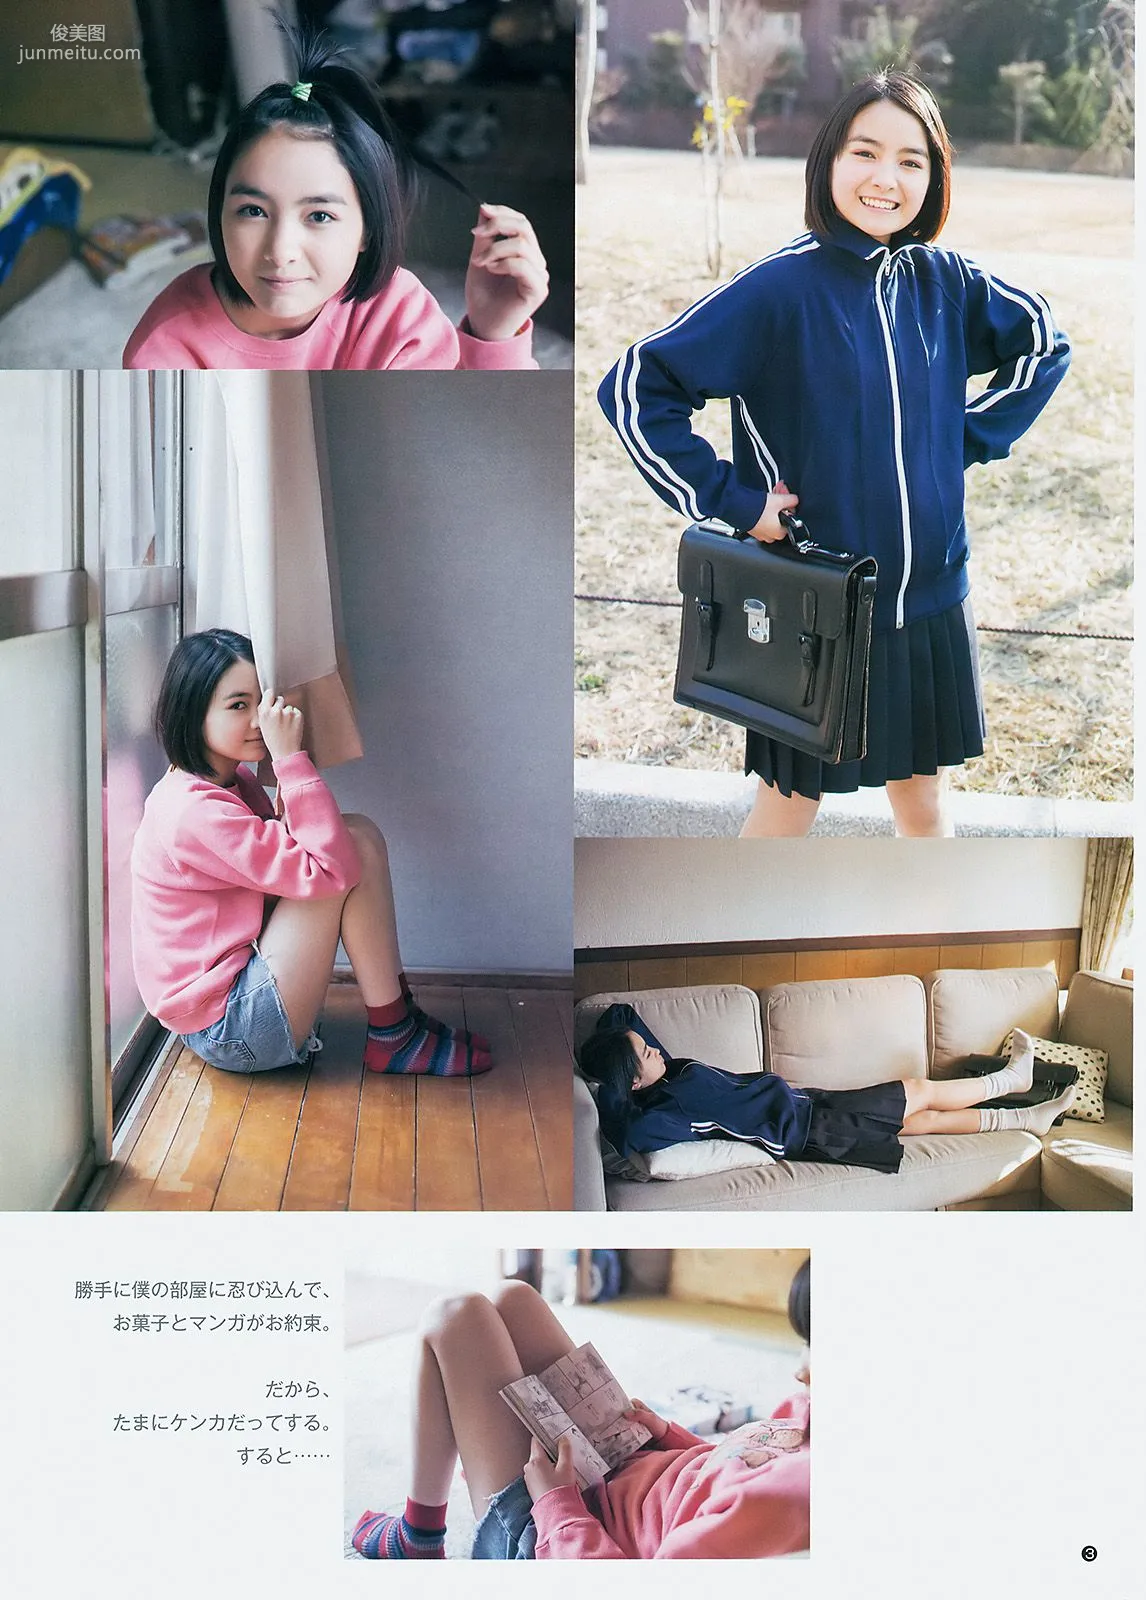 最上もが 葵わかな [Weekly Young Jump] 2014年No.27 写真杂志11